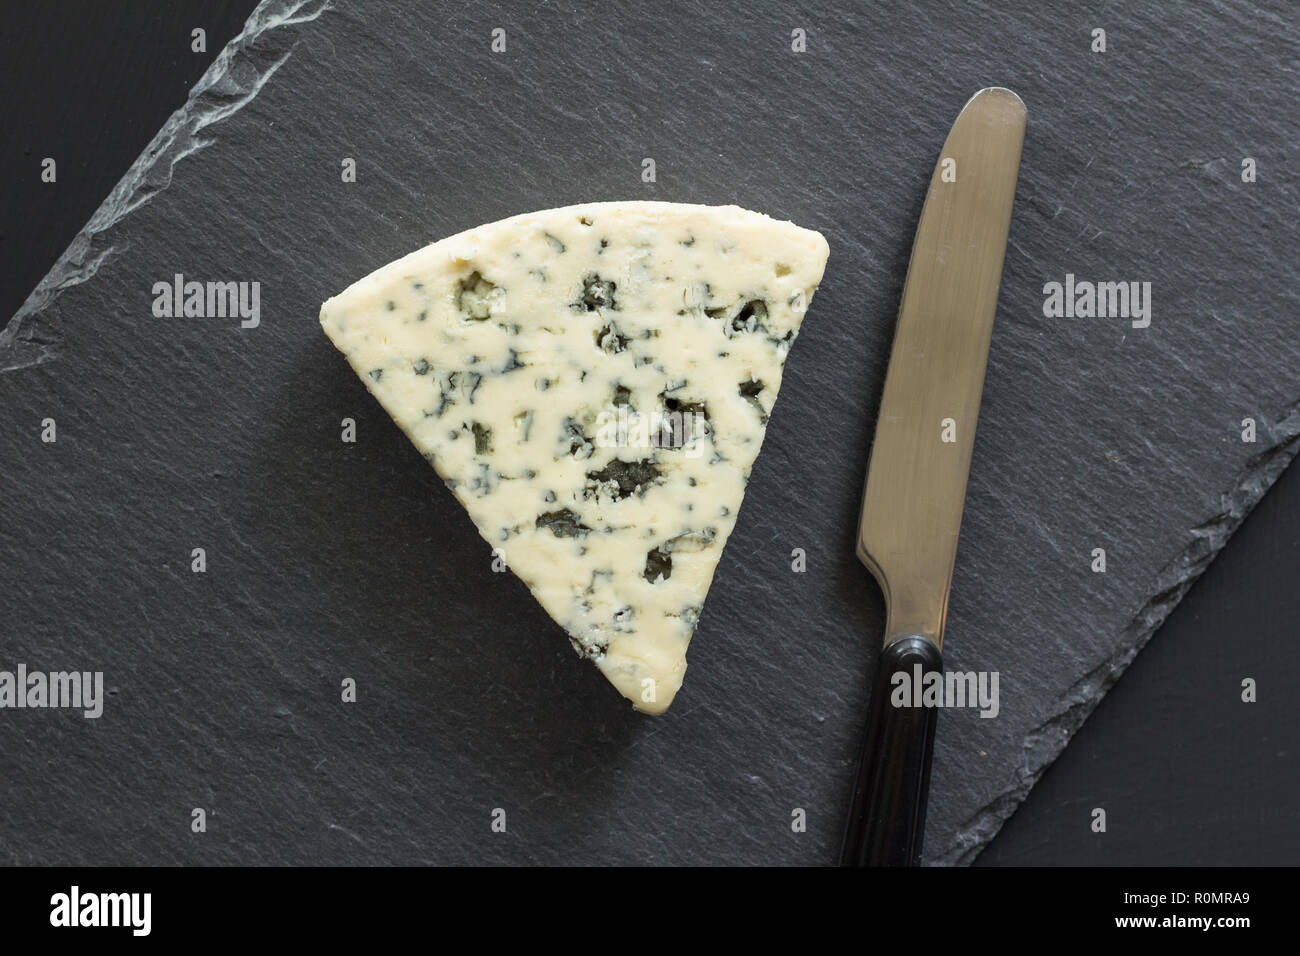 Blue Cheese Dreieck mit Messer auf schwarzem Schiefer Käsebrett isoliert - Roquefort Käse Ansicht von oben Foto Stockfoto